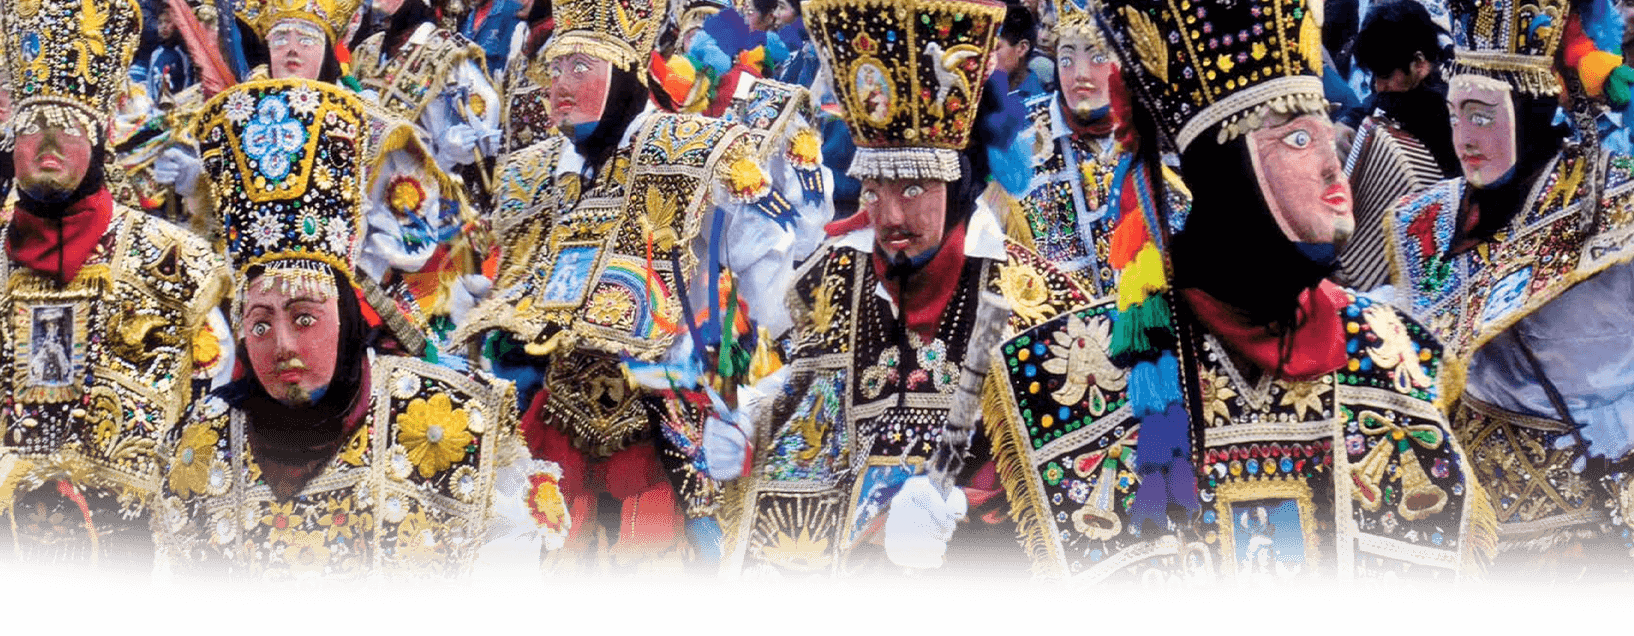 Cuzco: el lenguaje de la fiesta